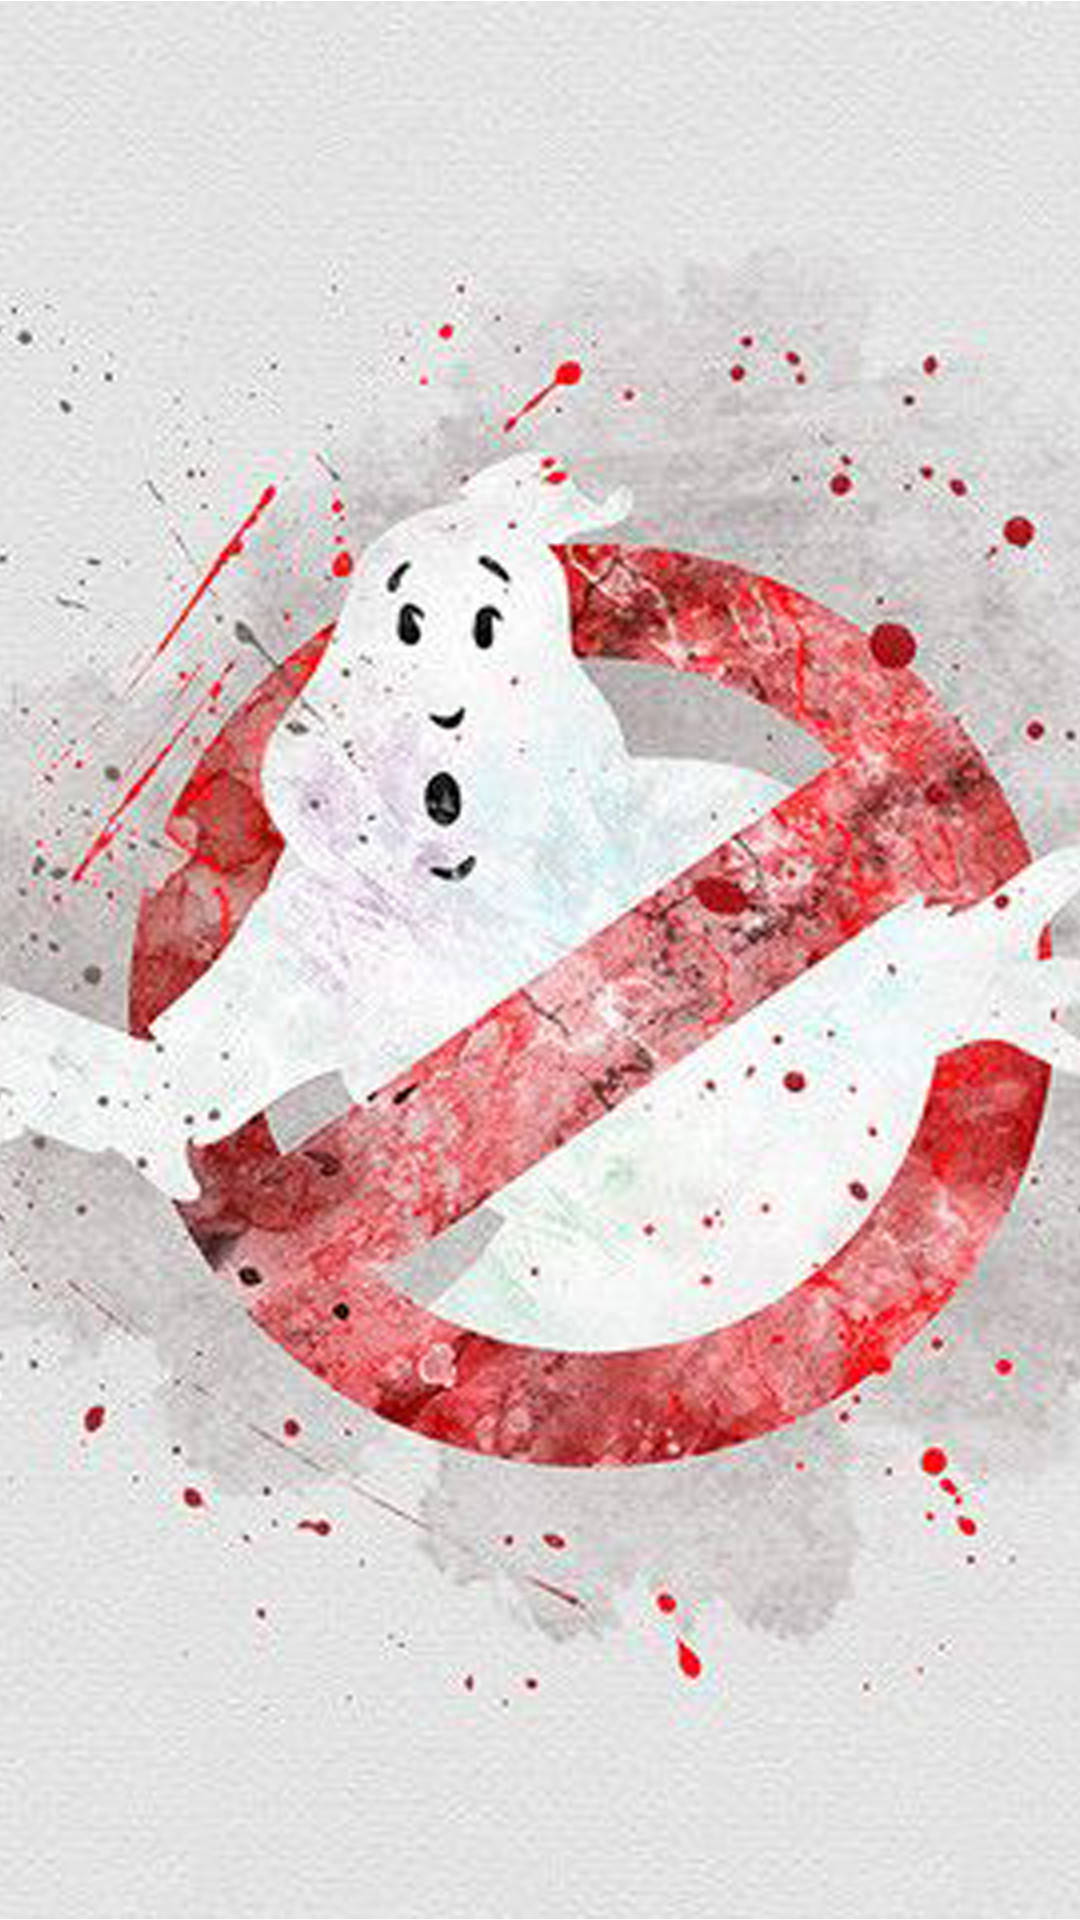 Ghostbusters Digital Painting